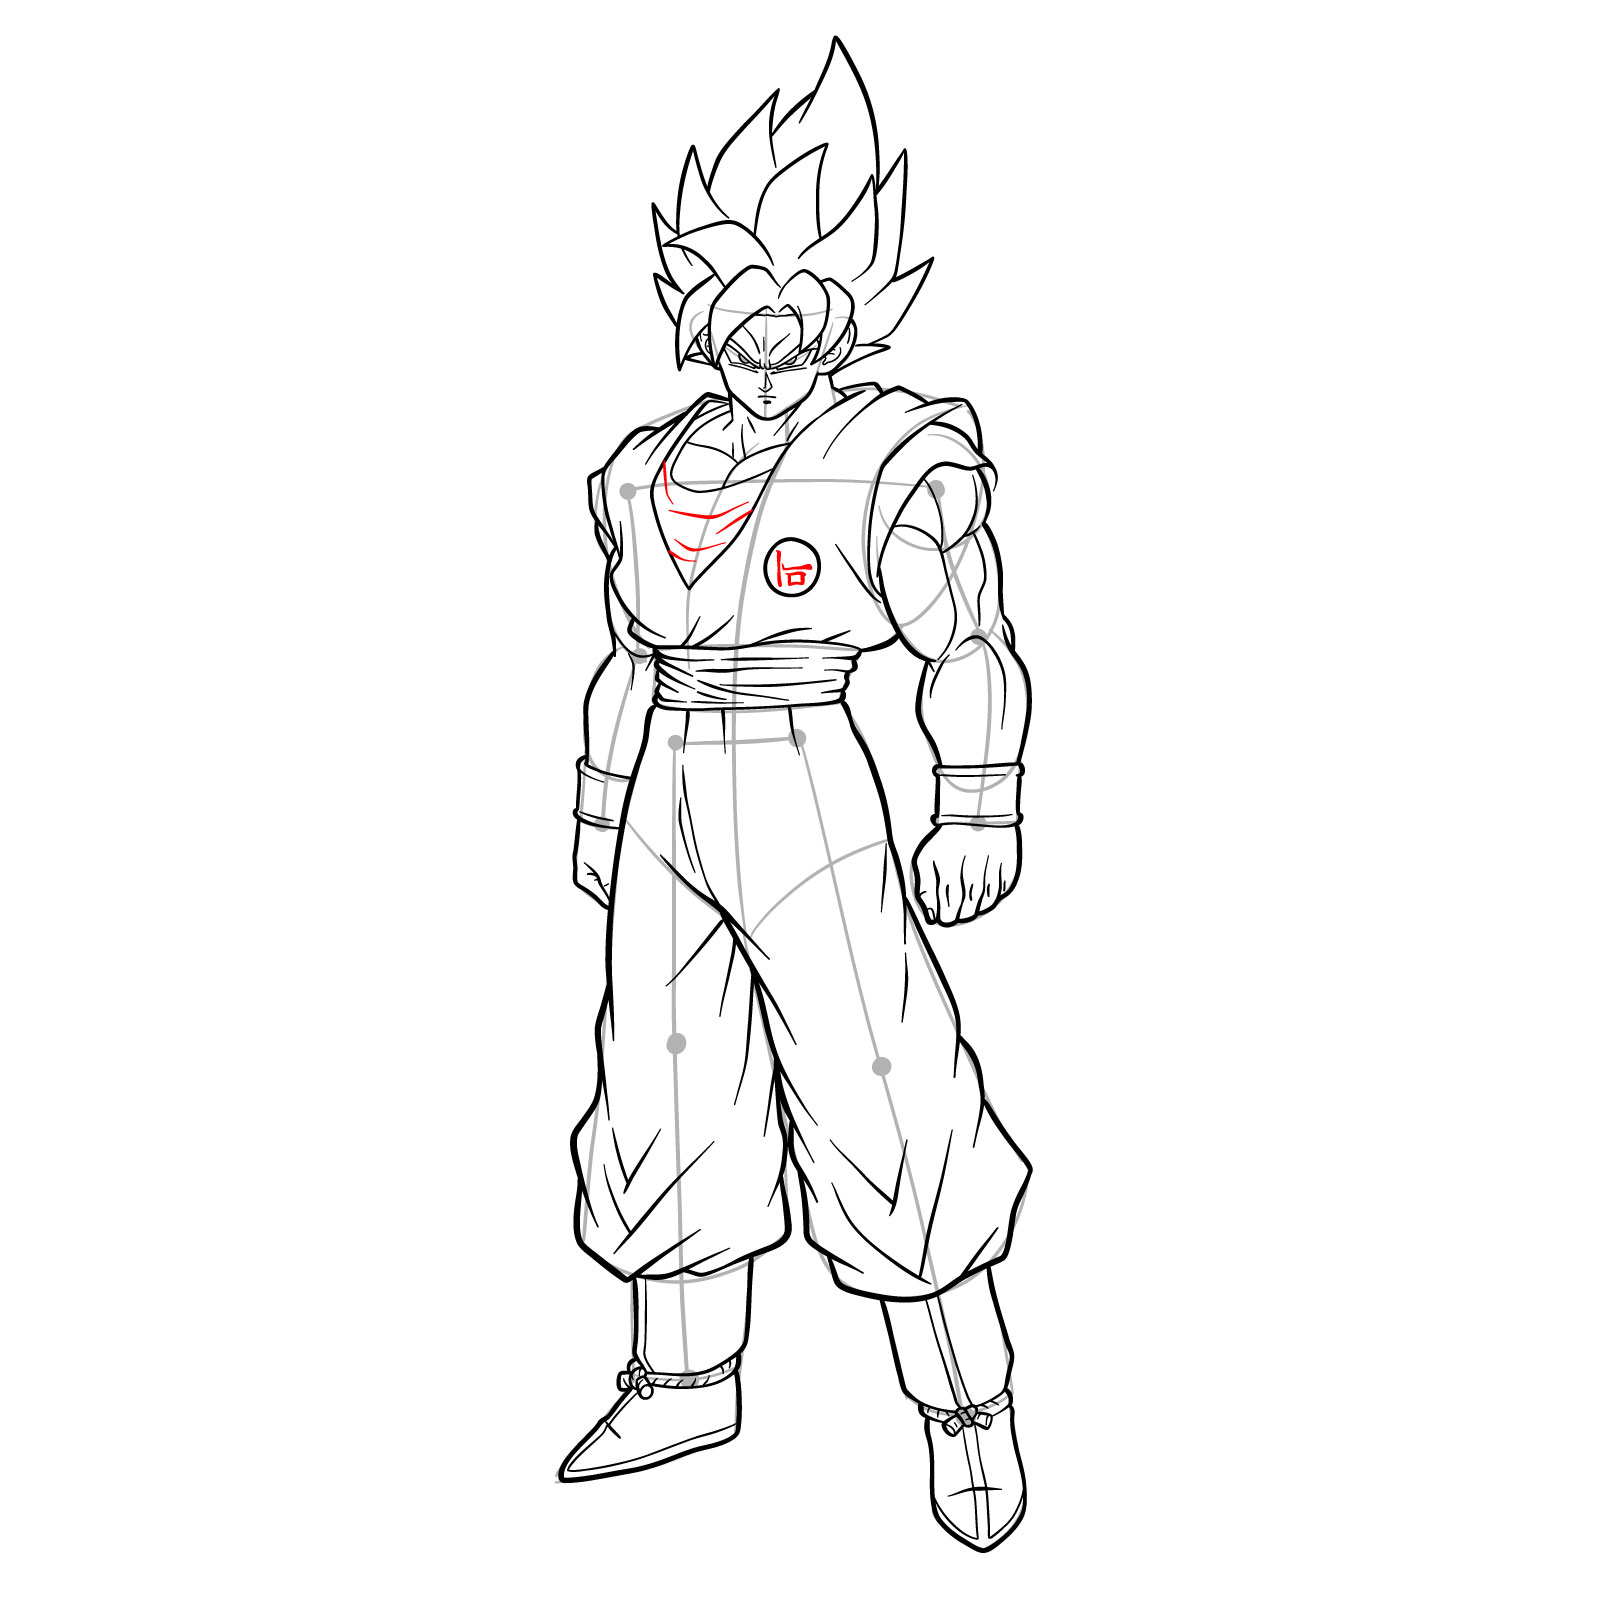 My Goku drawing this time. - 9GAG